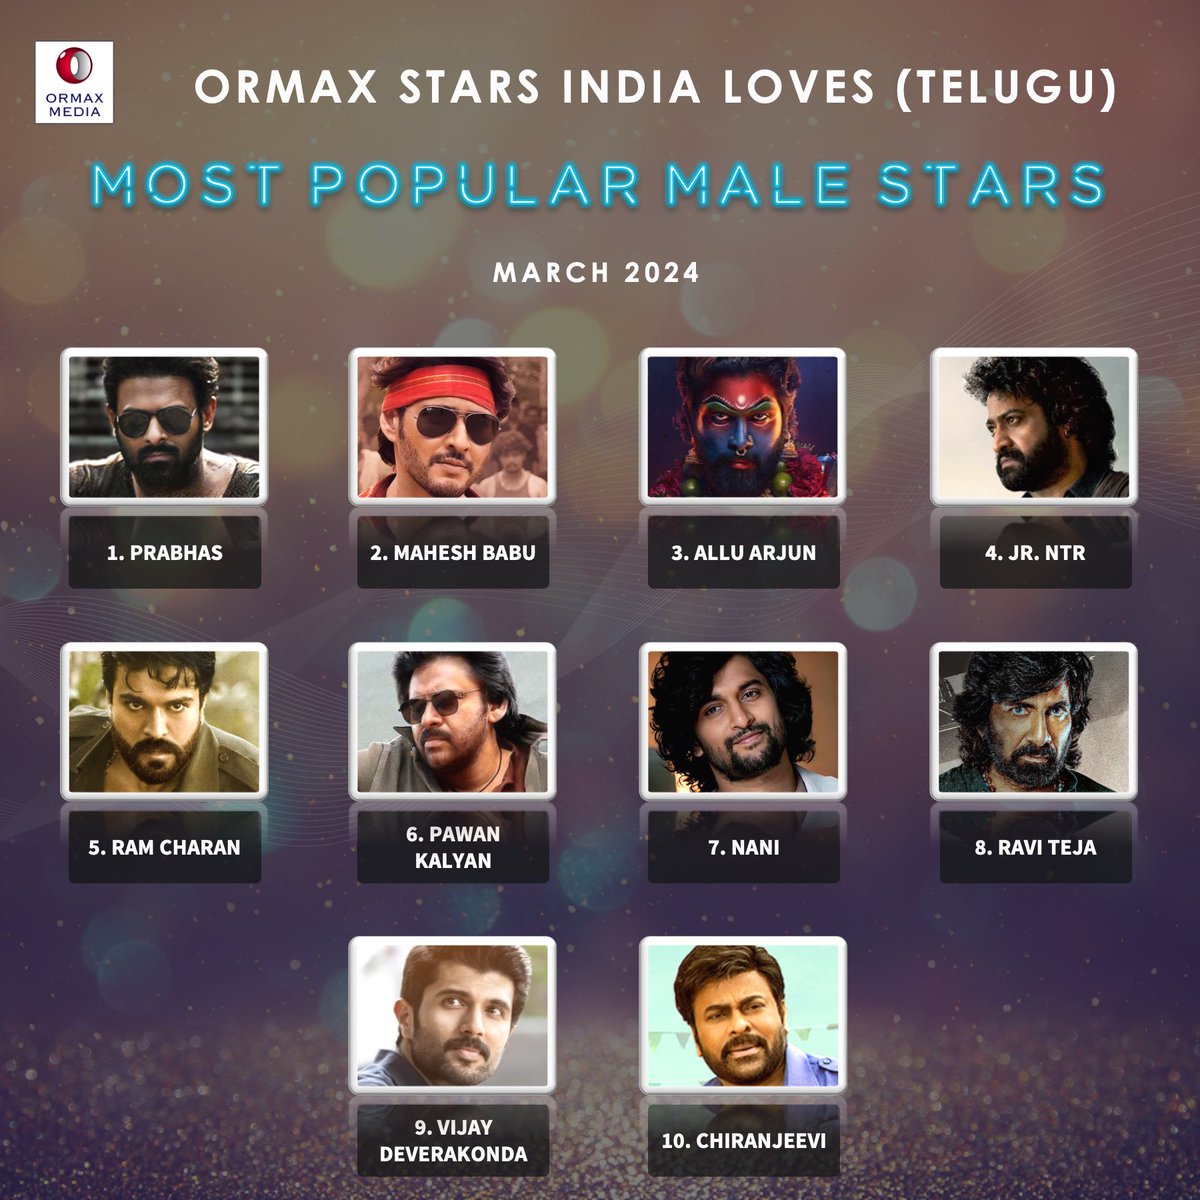 Ormax Stars India Loves: Most popular male Telugu film stars (Mar 2024) #OrmaxSIL